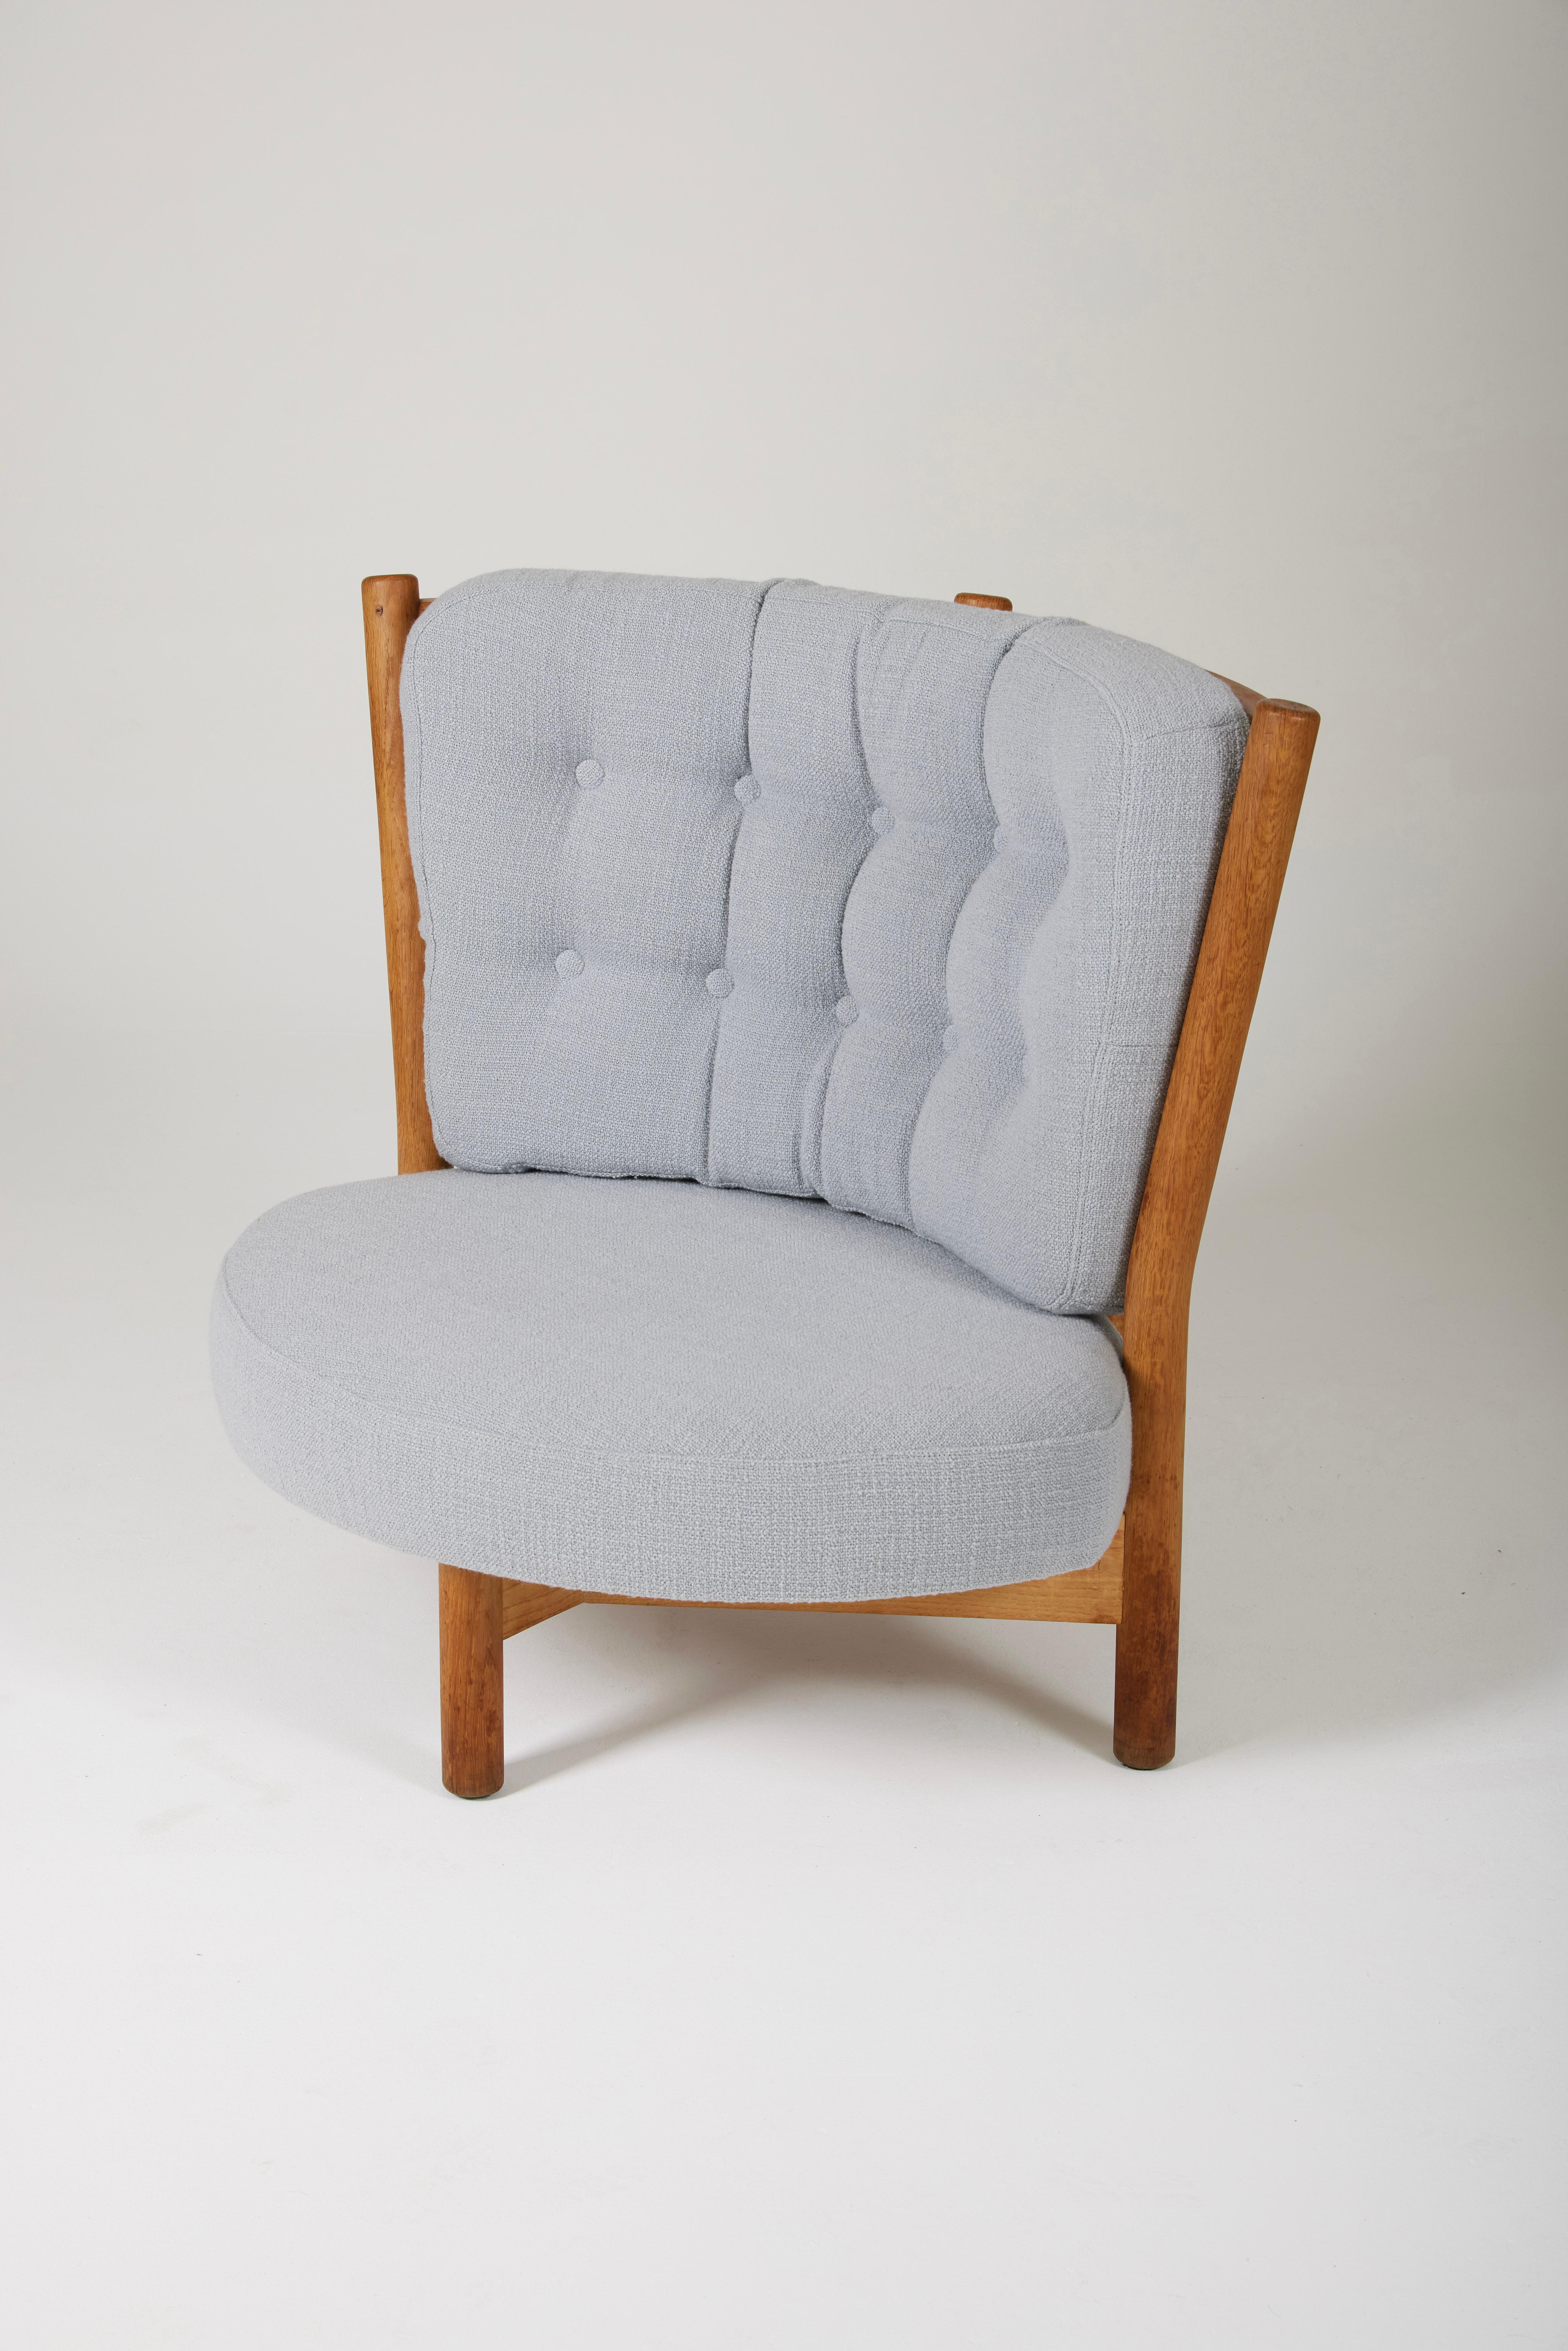 Sessel von Guillerme und Chambron, aus den 1960er Jahren. Gestell aus Eichenholz, Sitz und Rückenlehne komplett neu gepolstert mit dem hochwertigen Stoff 